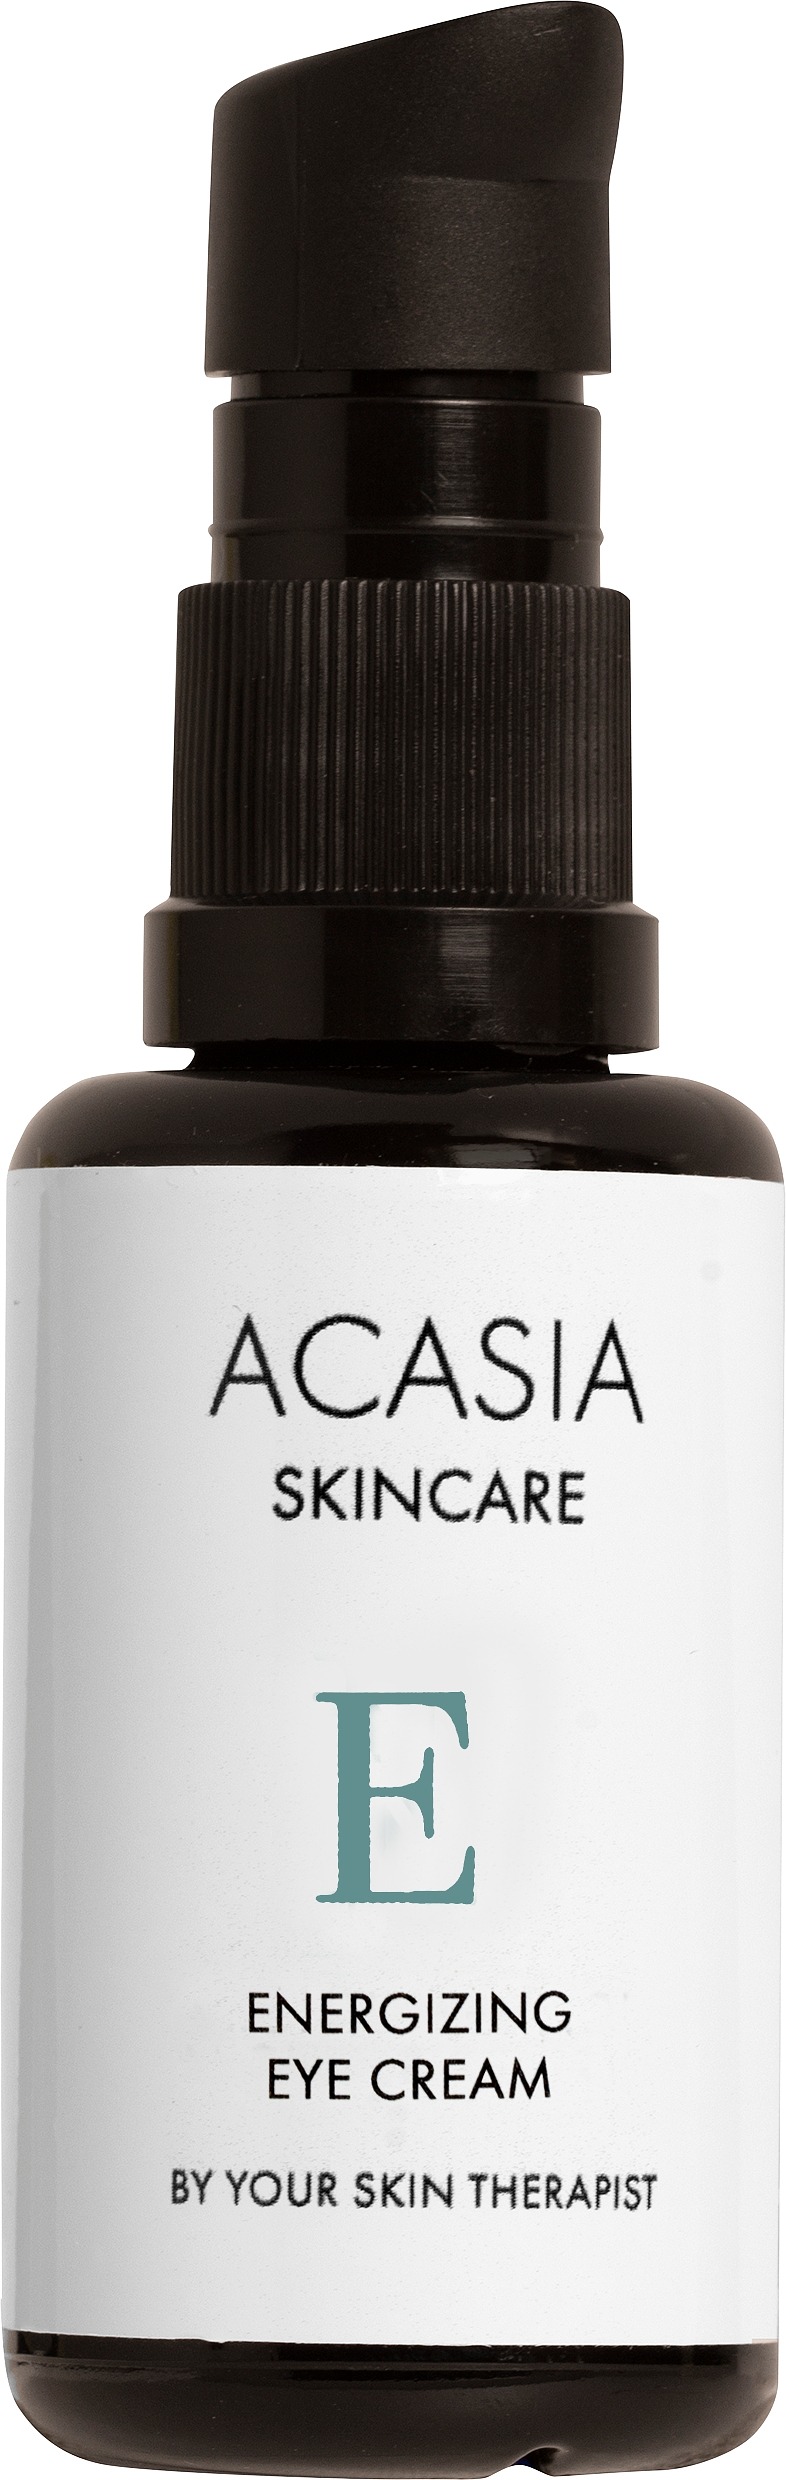 Acasia Skincare Energizing Eye Cream 30 ml